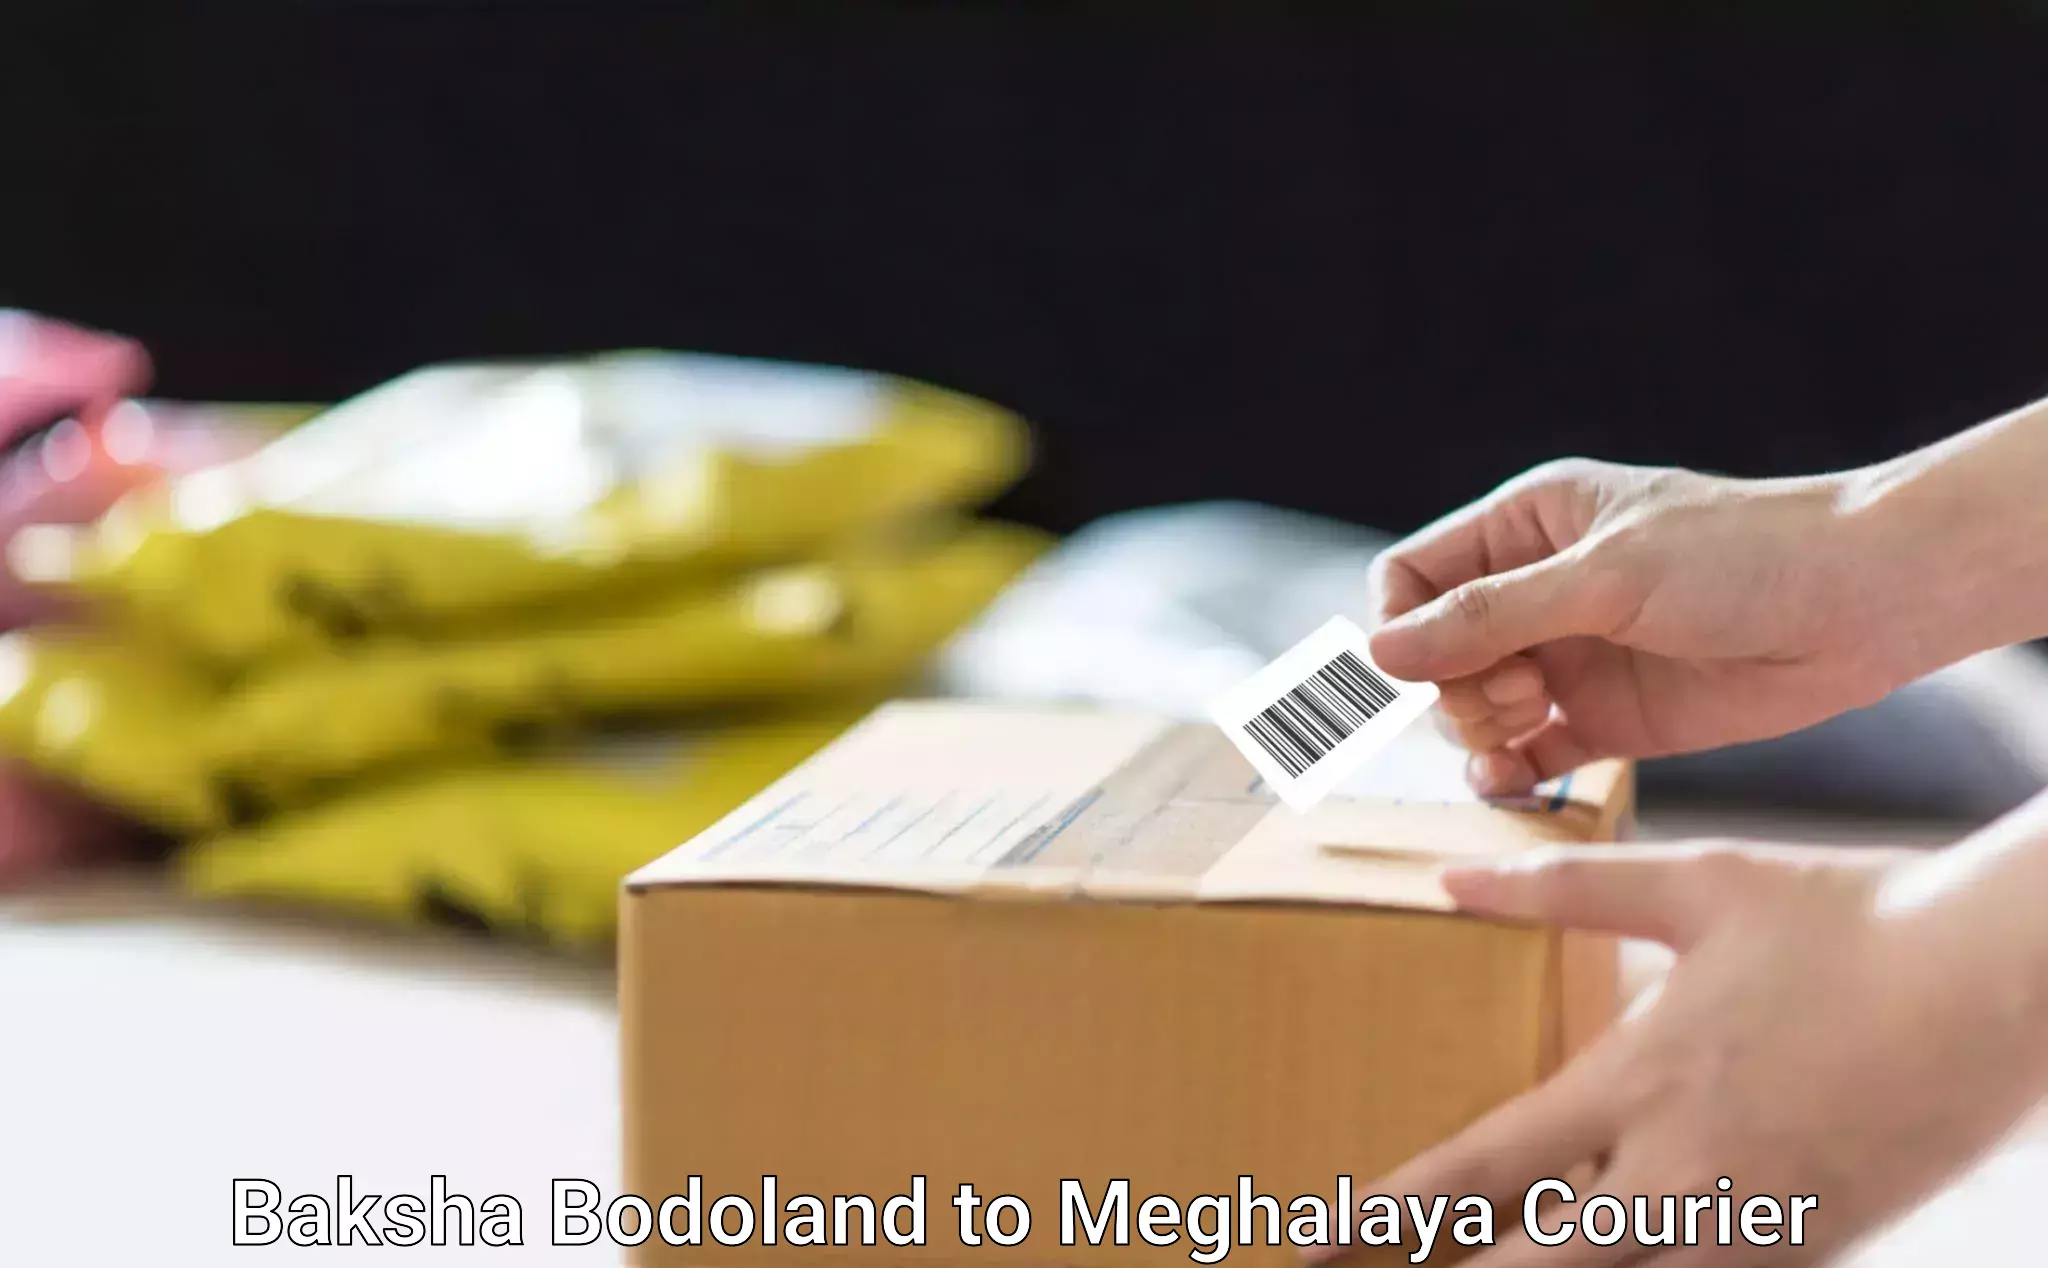 Diverse delivery methods Baksha Bodoland to Meghalaya